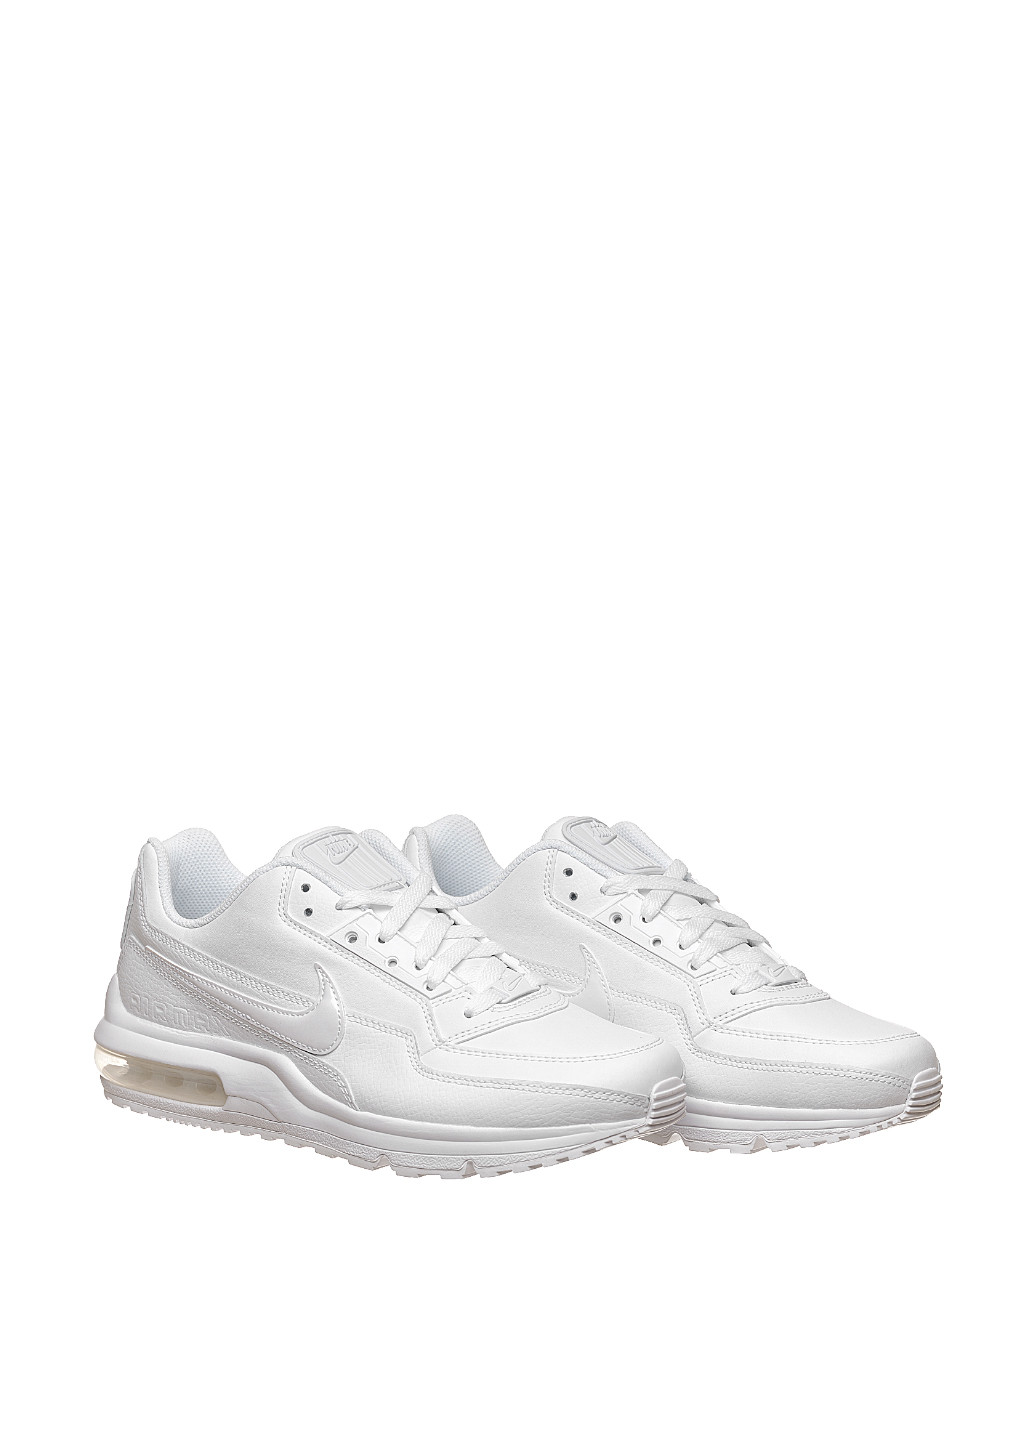 Белые всесезонные кроссовки 687977-111_2024 Nike AIR MAX LTD 3